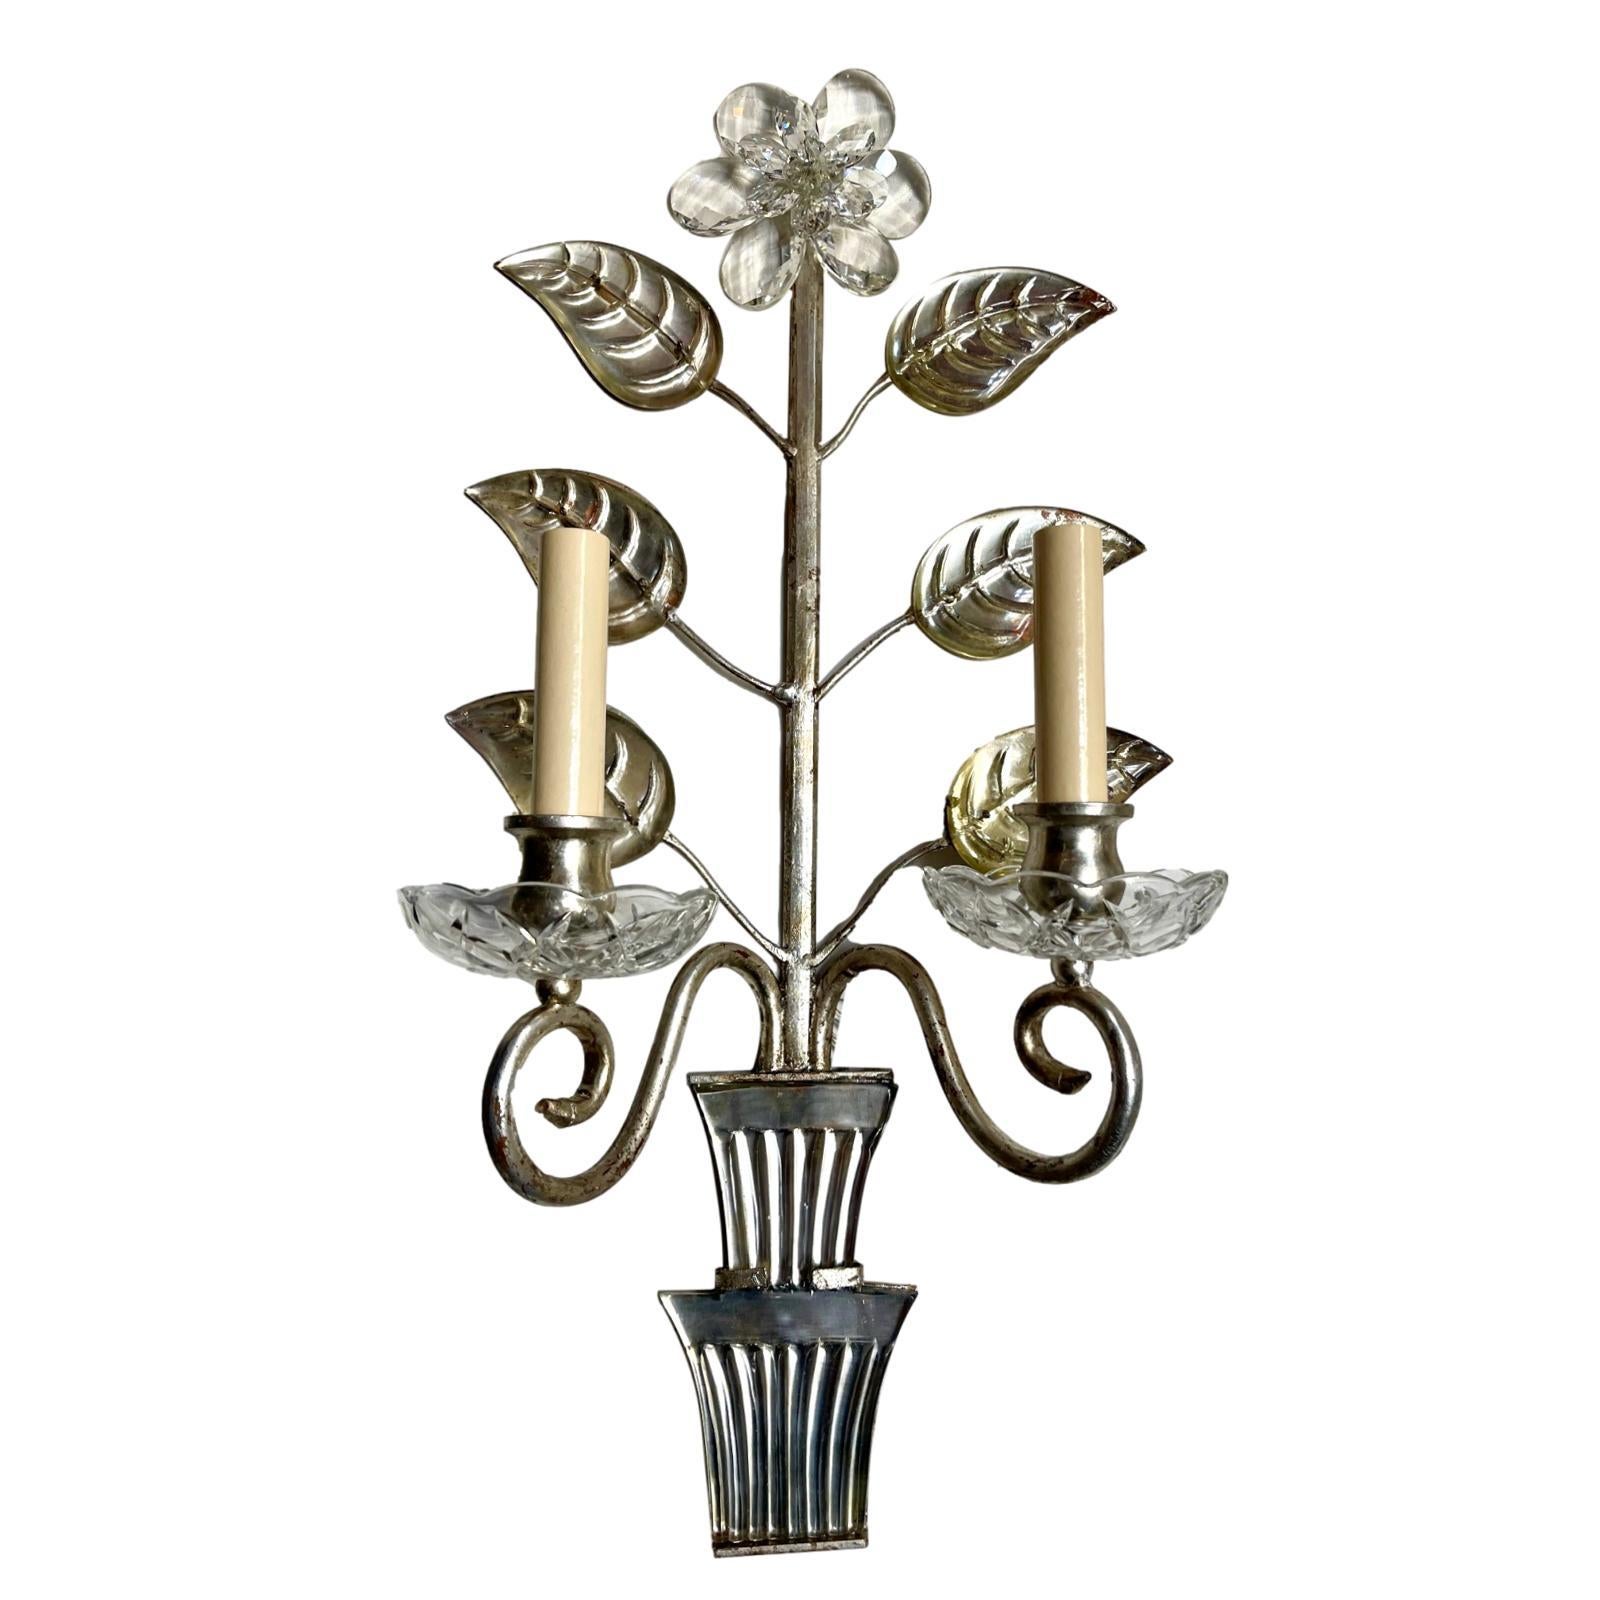 Paire d'appliques françaises des années 1960 à deux bras de lumière argentés avec feuilles en verre moulé et miroir et fleurs en cristal.

Mesures :
Hauteur : 22